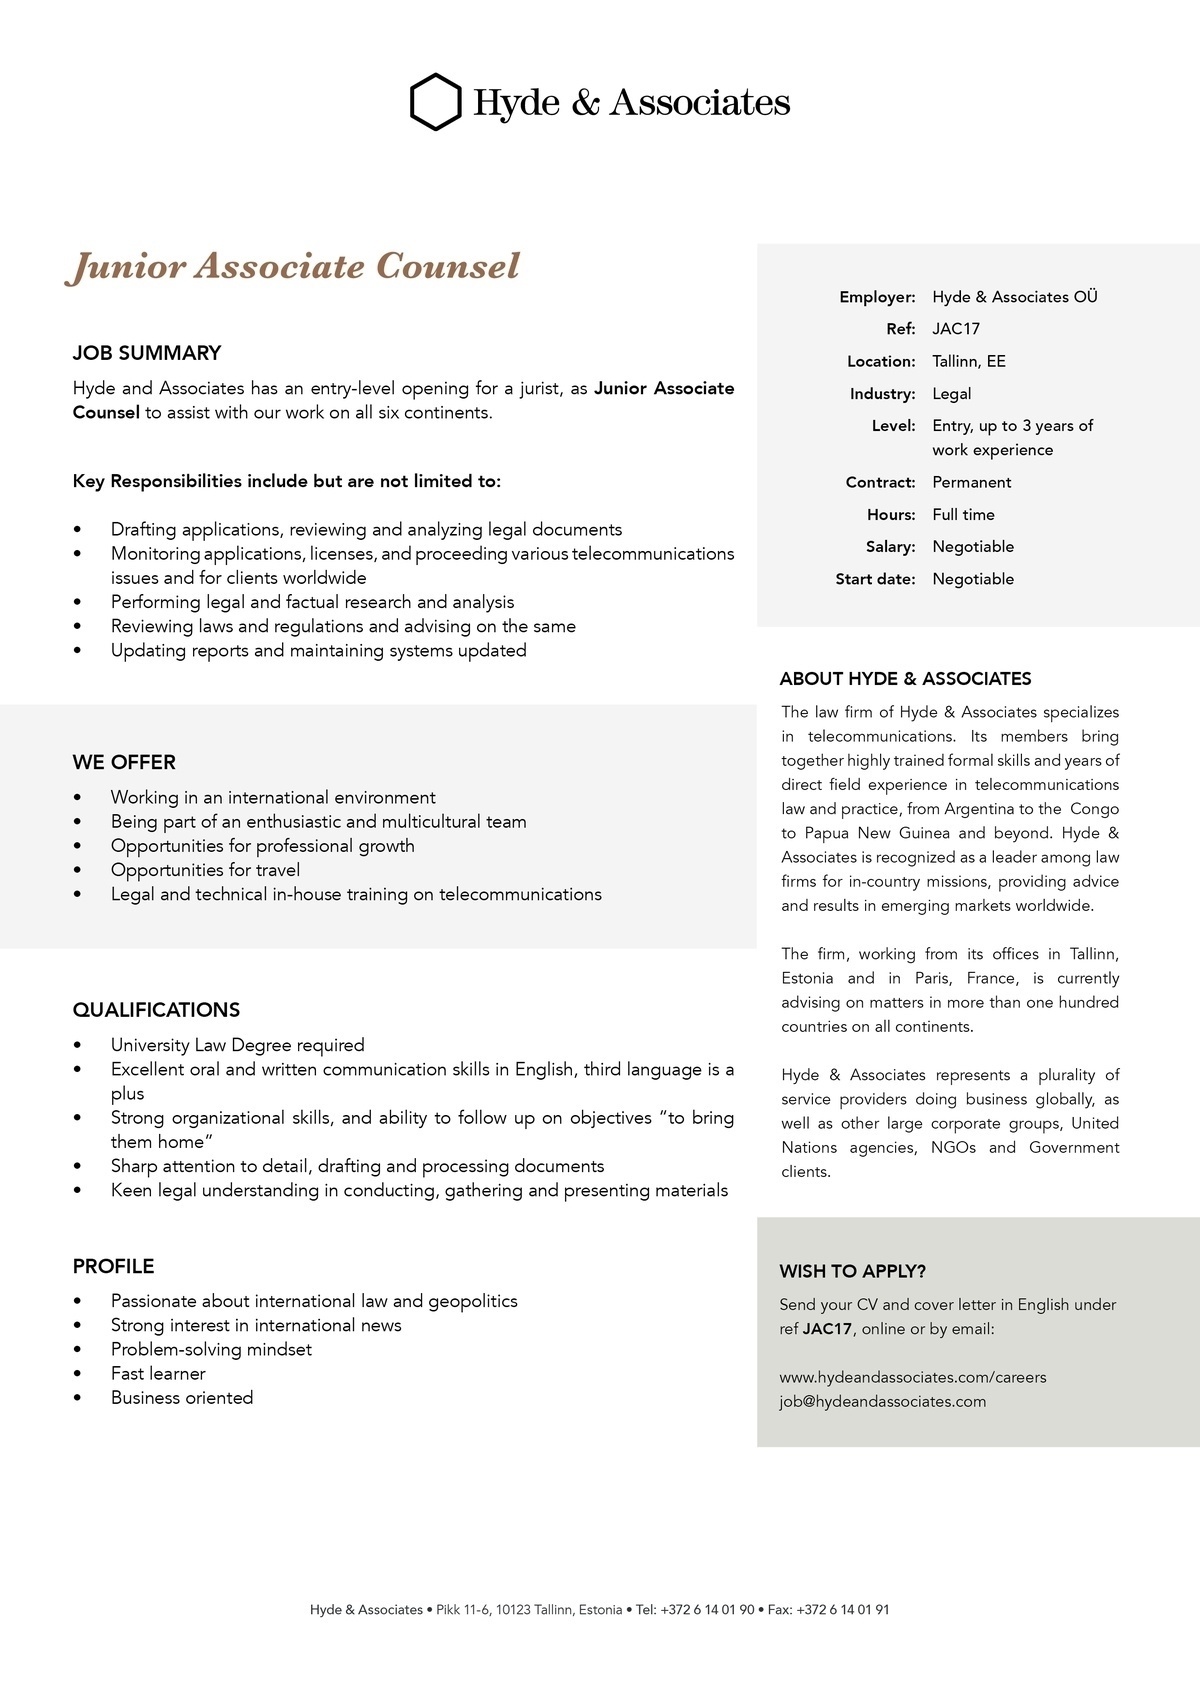 HYDE & ASSOCIATES OÜ Junior Associate Councel